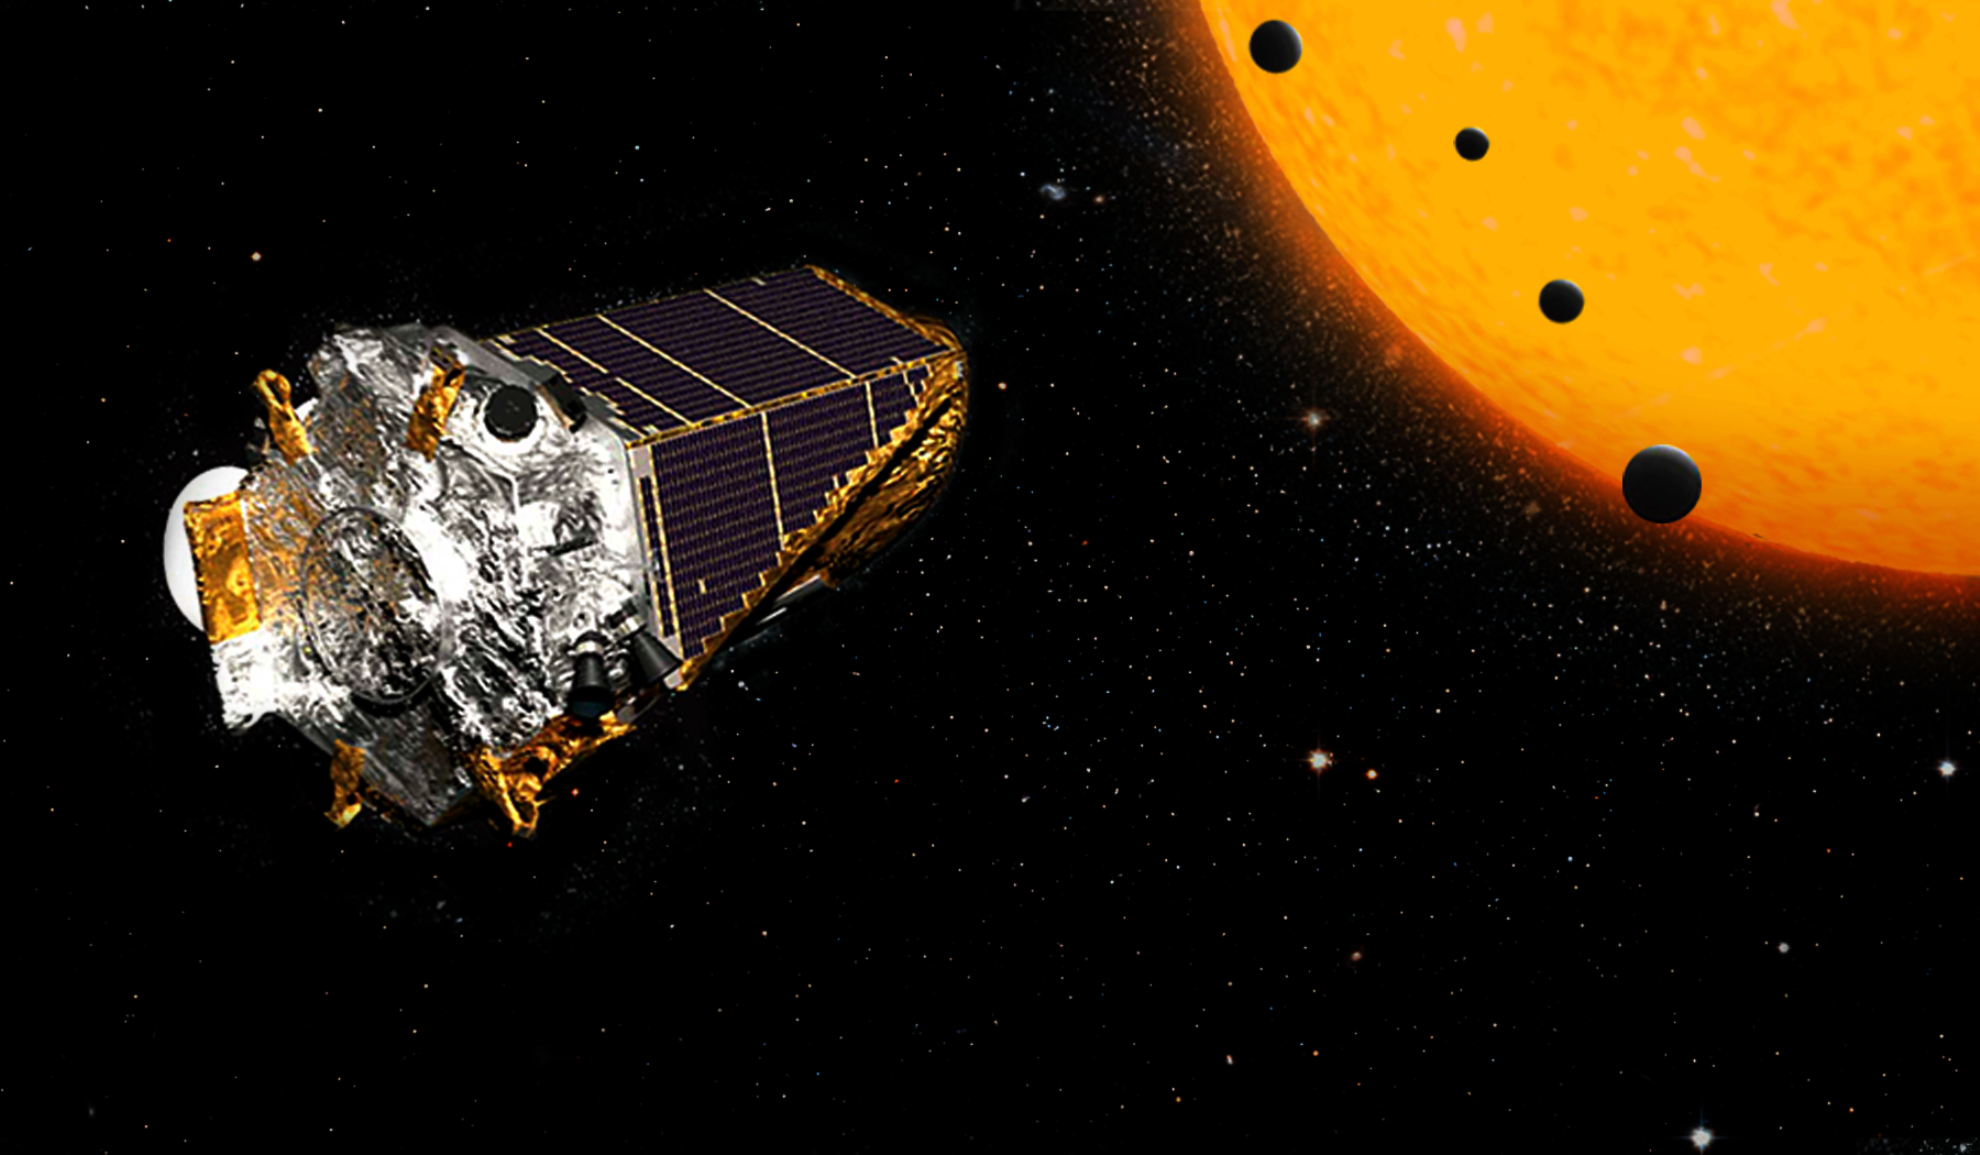 Une vue d'artiste de Kepler chassant les exoplanètes. © Nasa, JPL Caltech